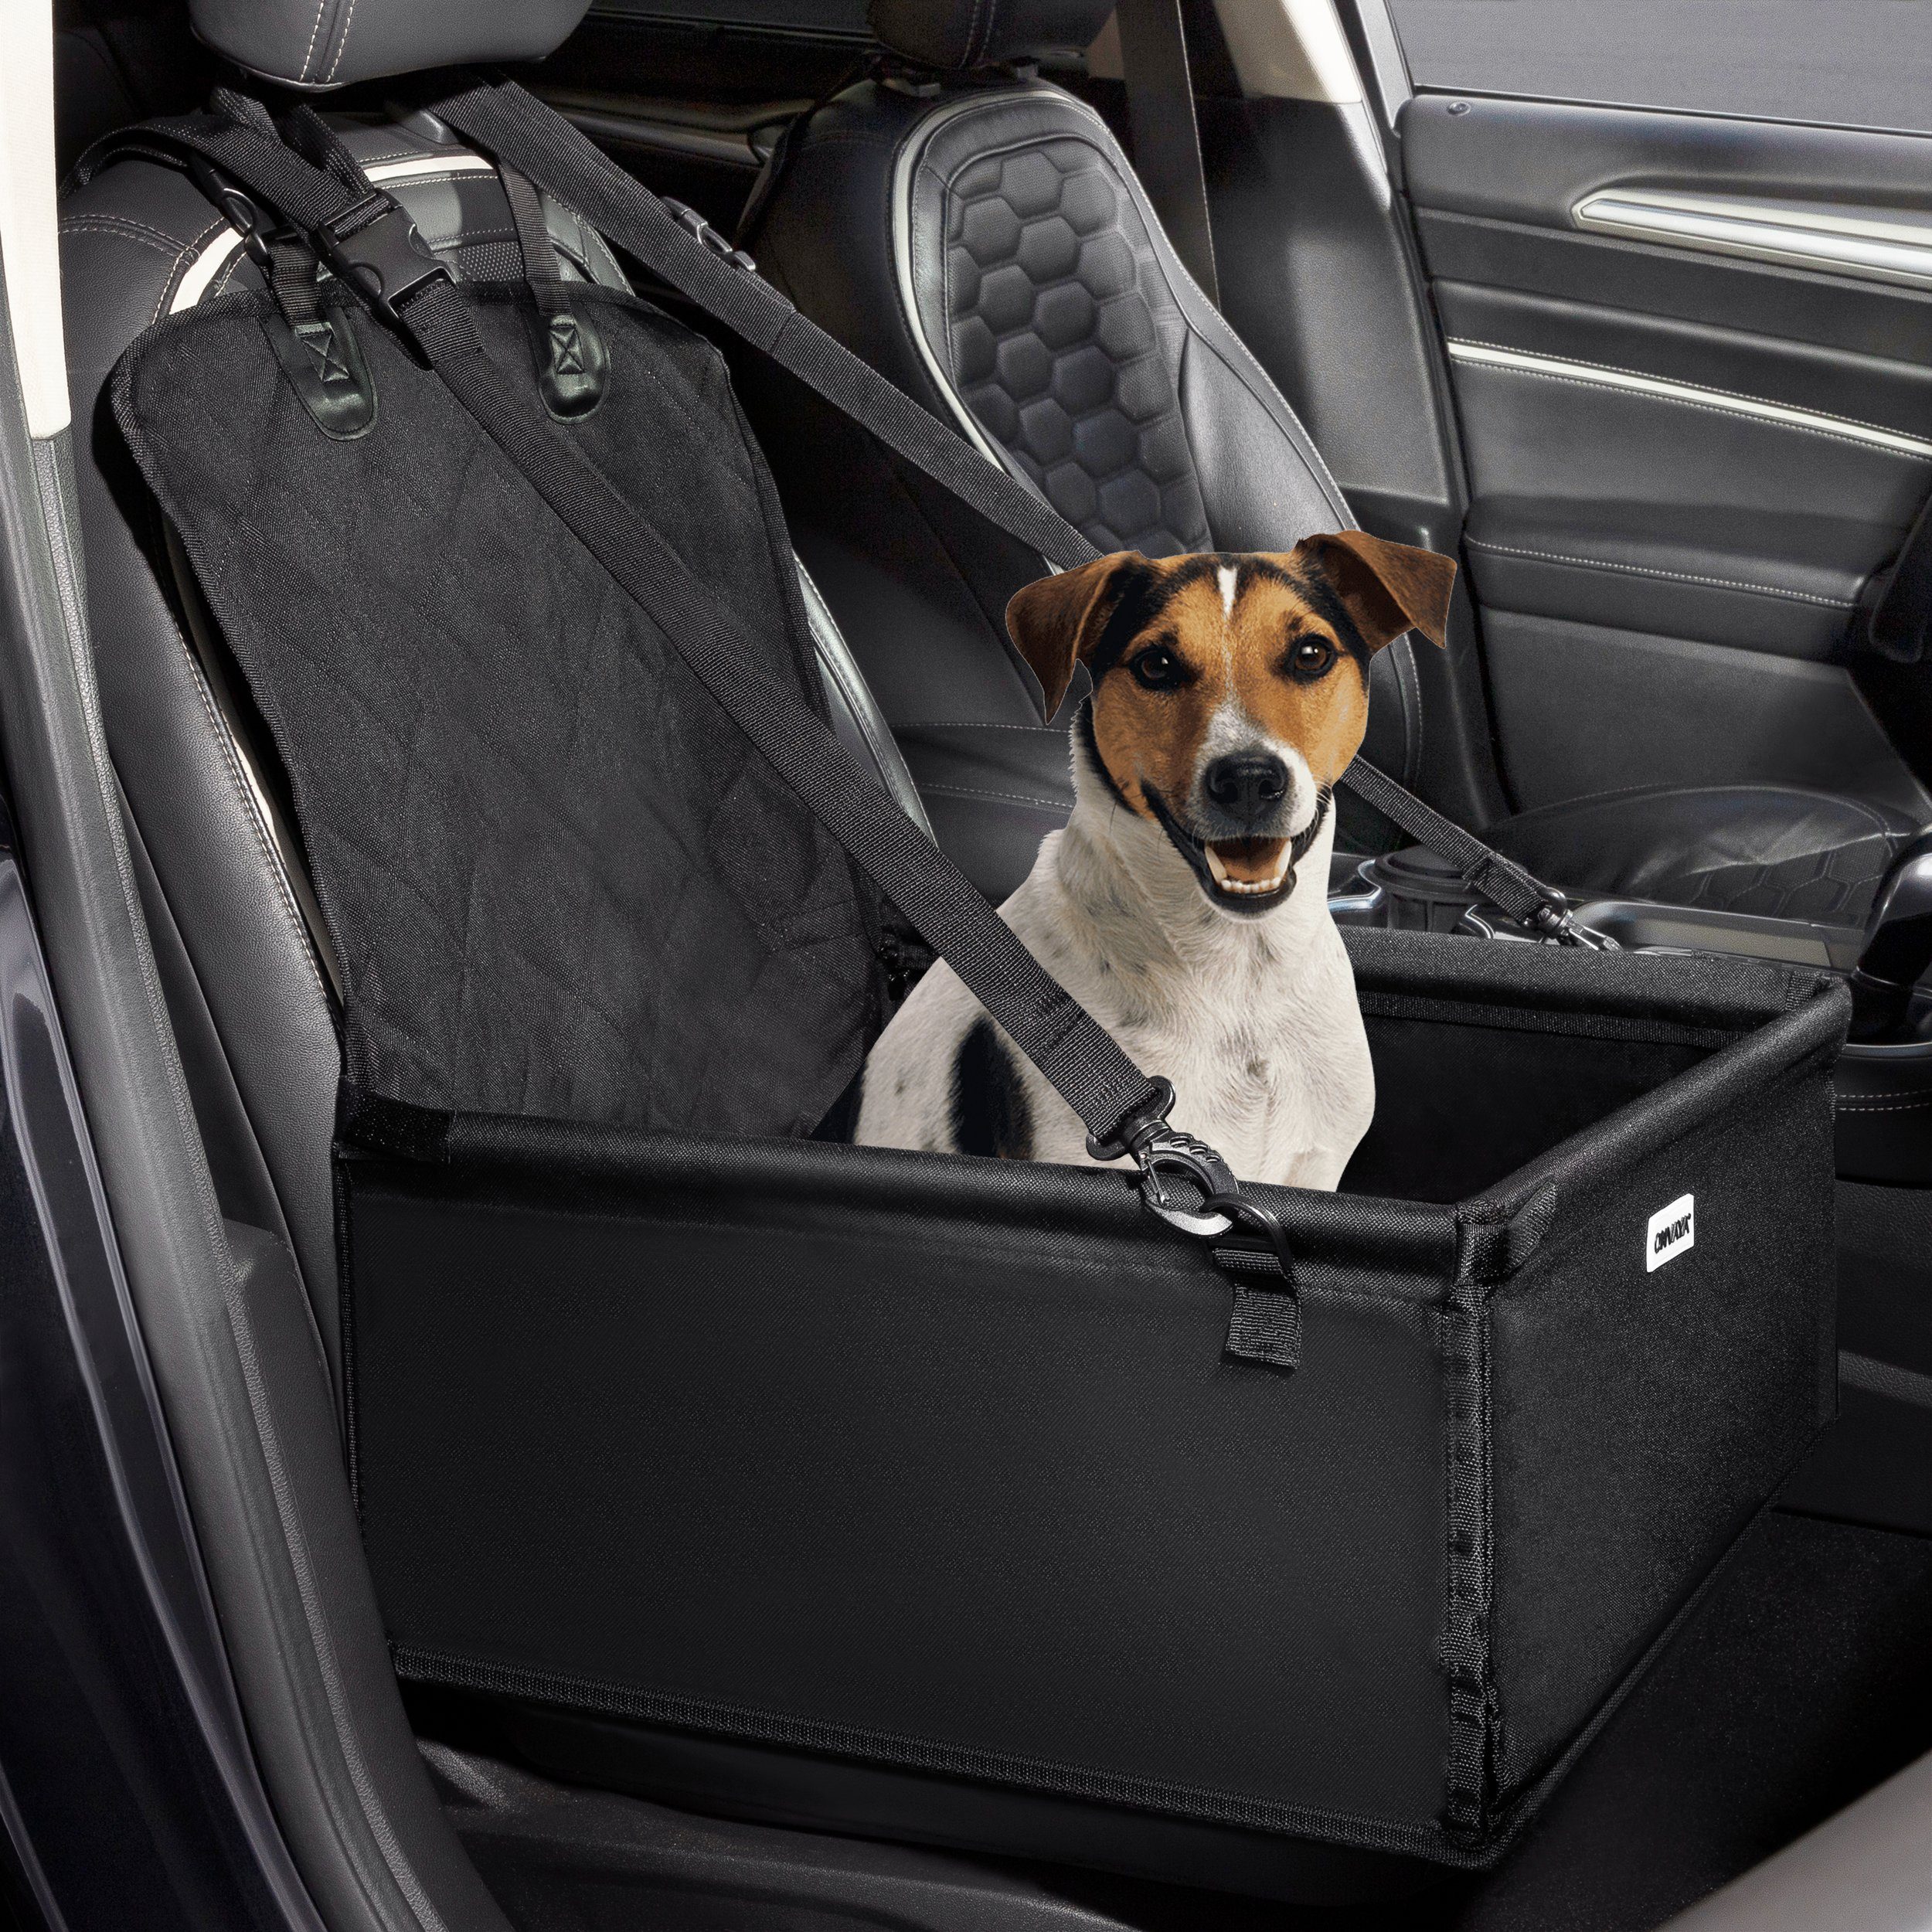 ONVAYA Hunde-Autositz »Hundebox Auto, Hunde Autositz mit Anschnallgurt,  faltbarer Hundesitz fürs Auto, Hundekorb geeignet für Rücksitz und  Vordersitz, für kleine und mittlere Hunde« online kaufen | OTTO